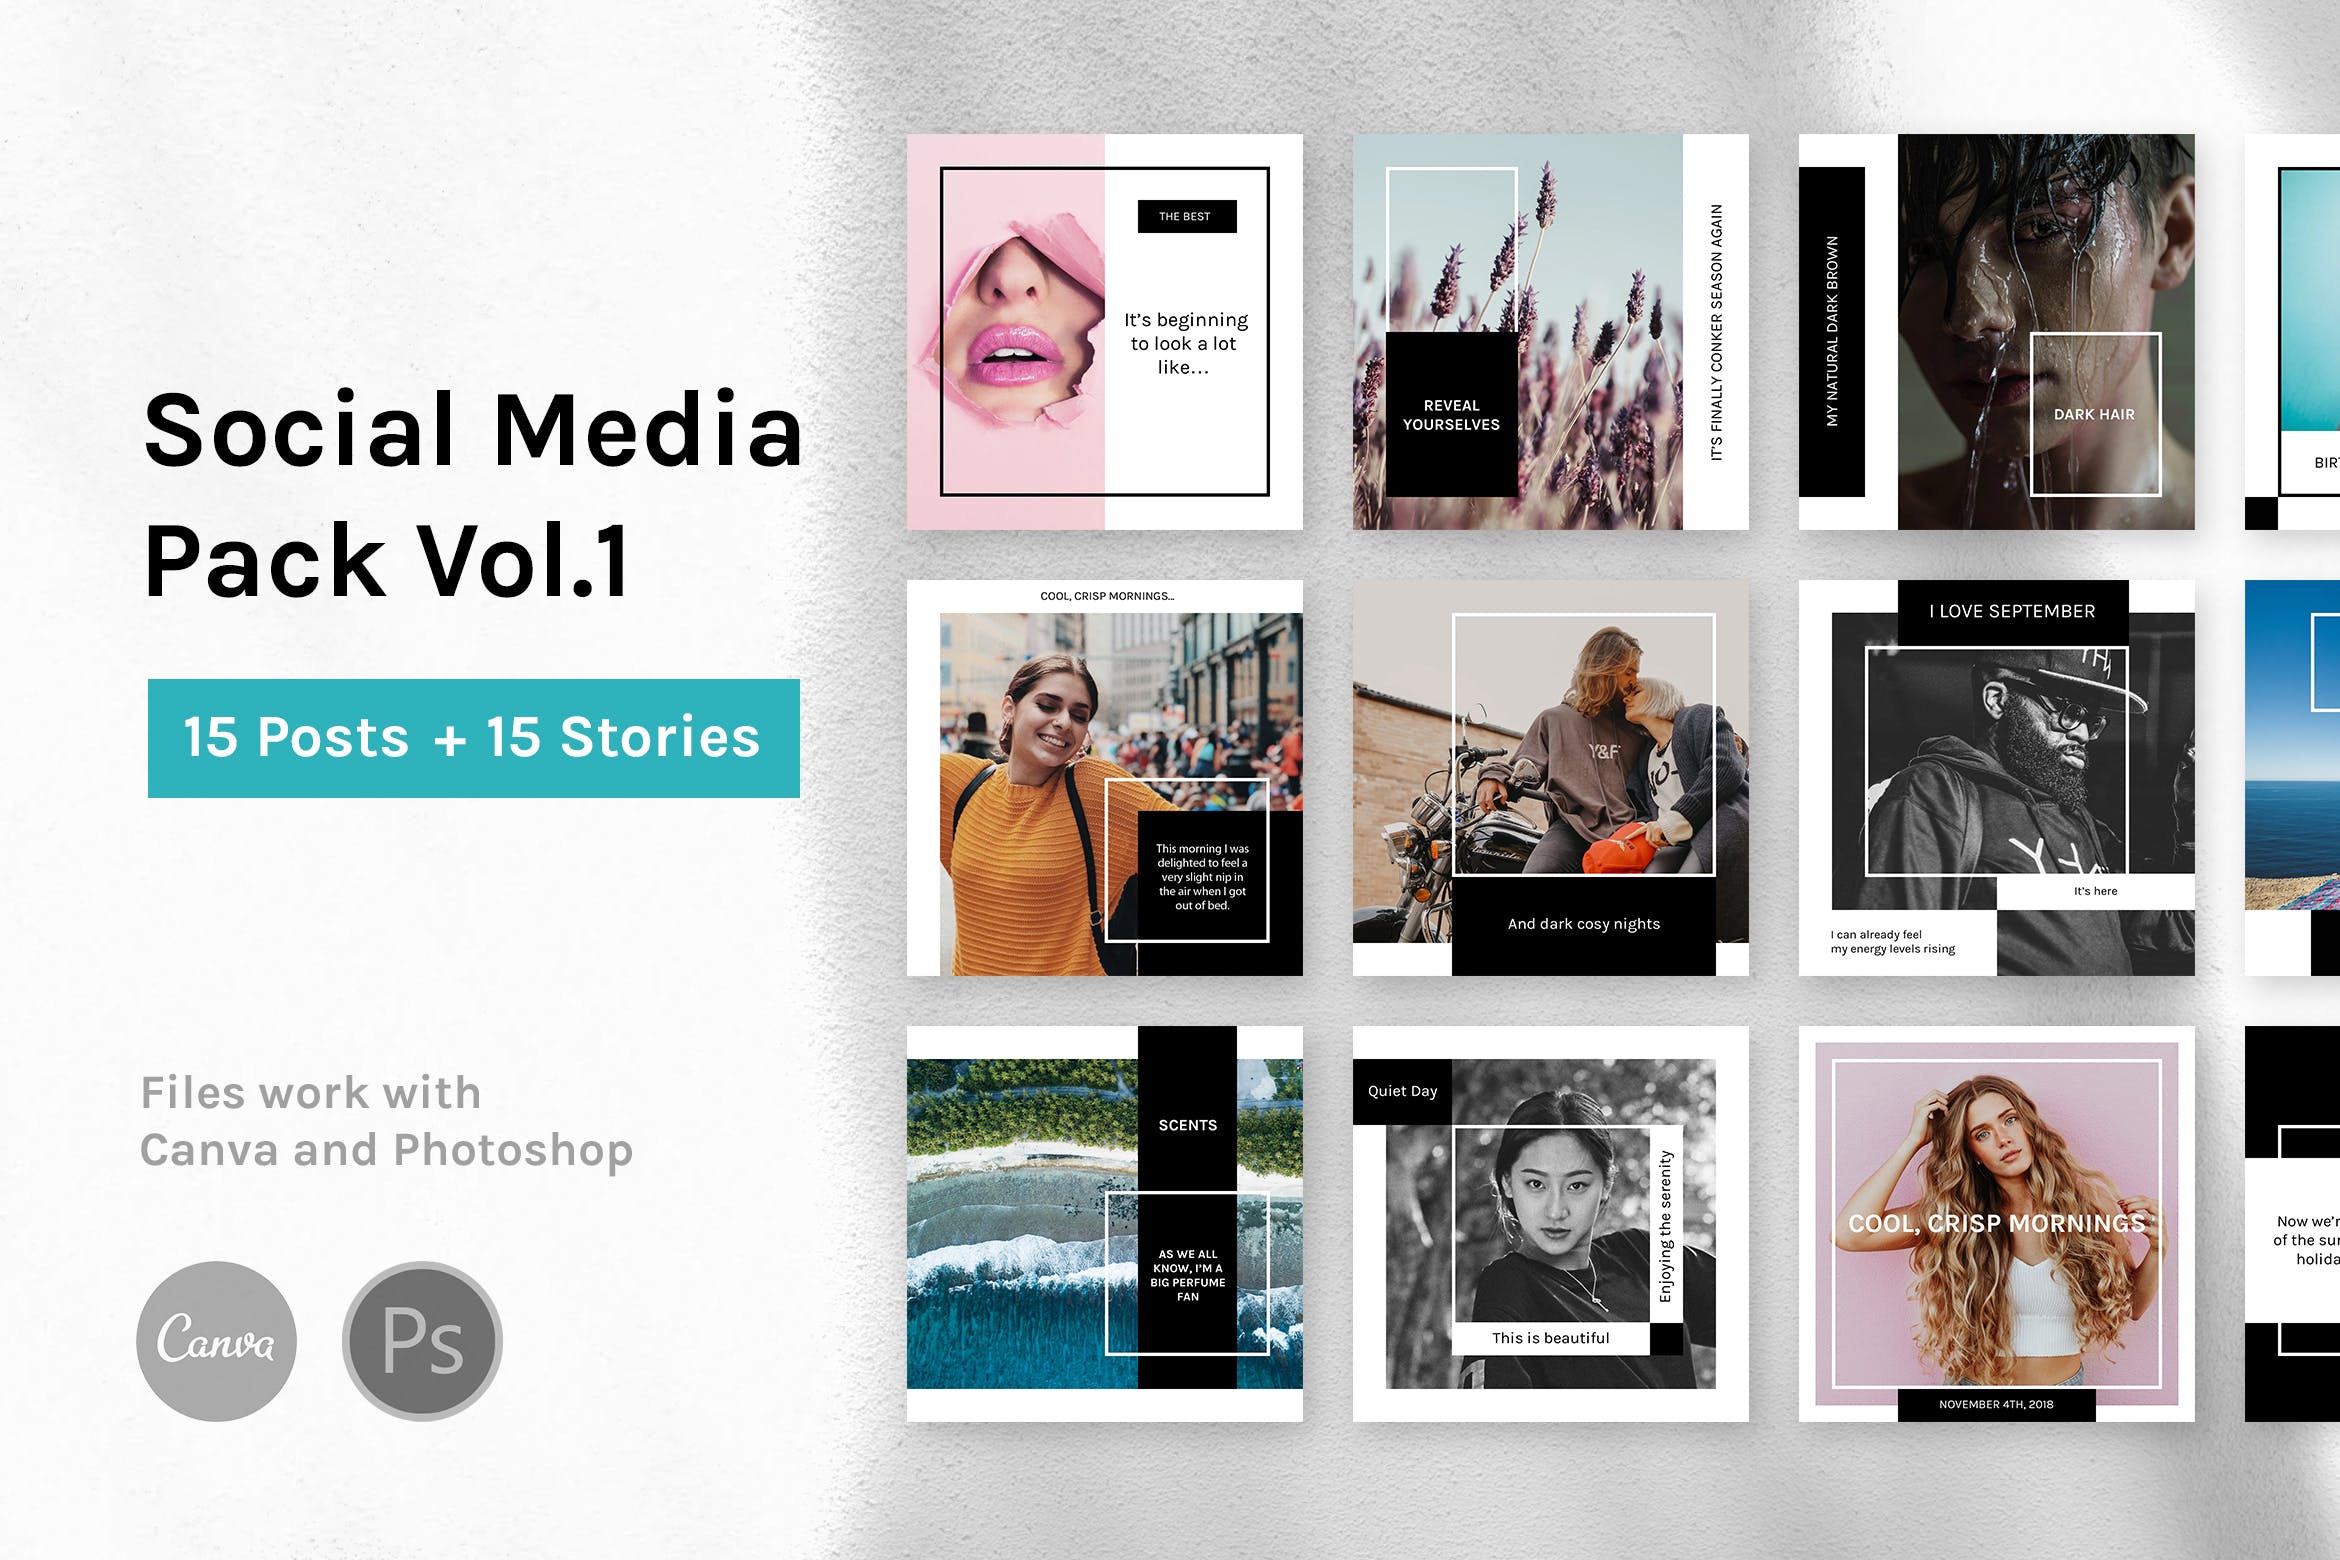 社交媒体自媒体品牌故事&贴图设计模板素材库精选v1 Social Media Pack Vol.1插图